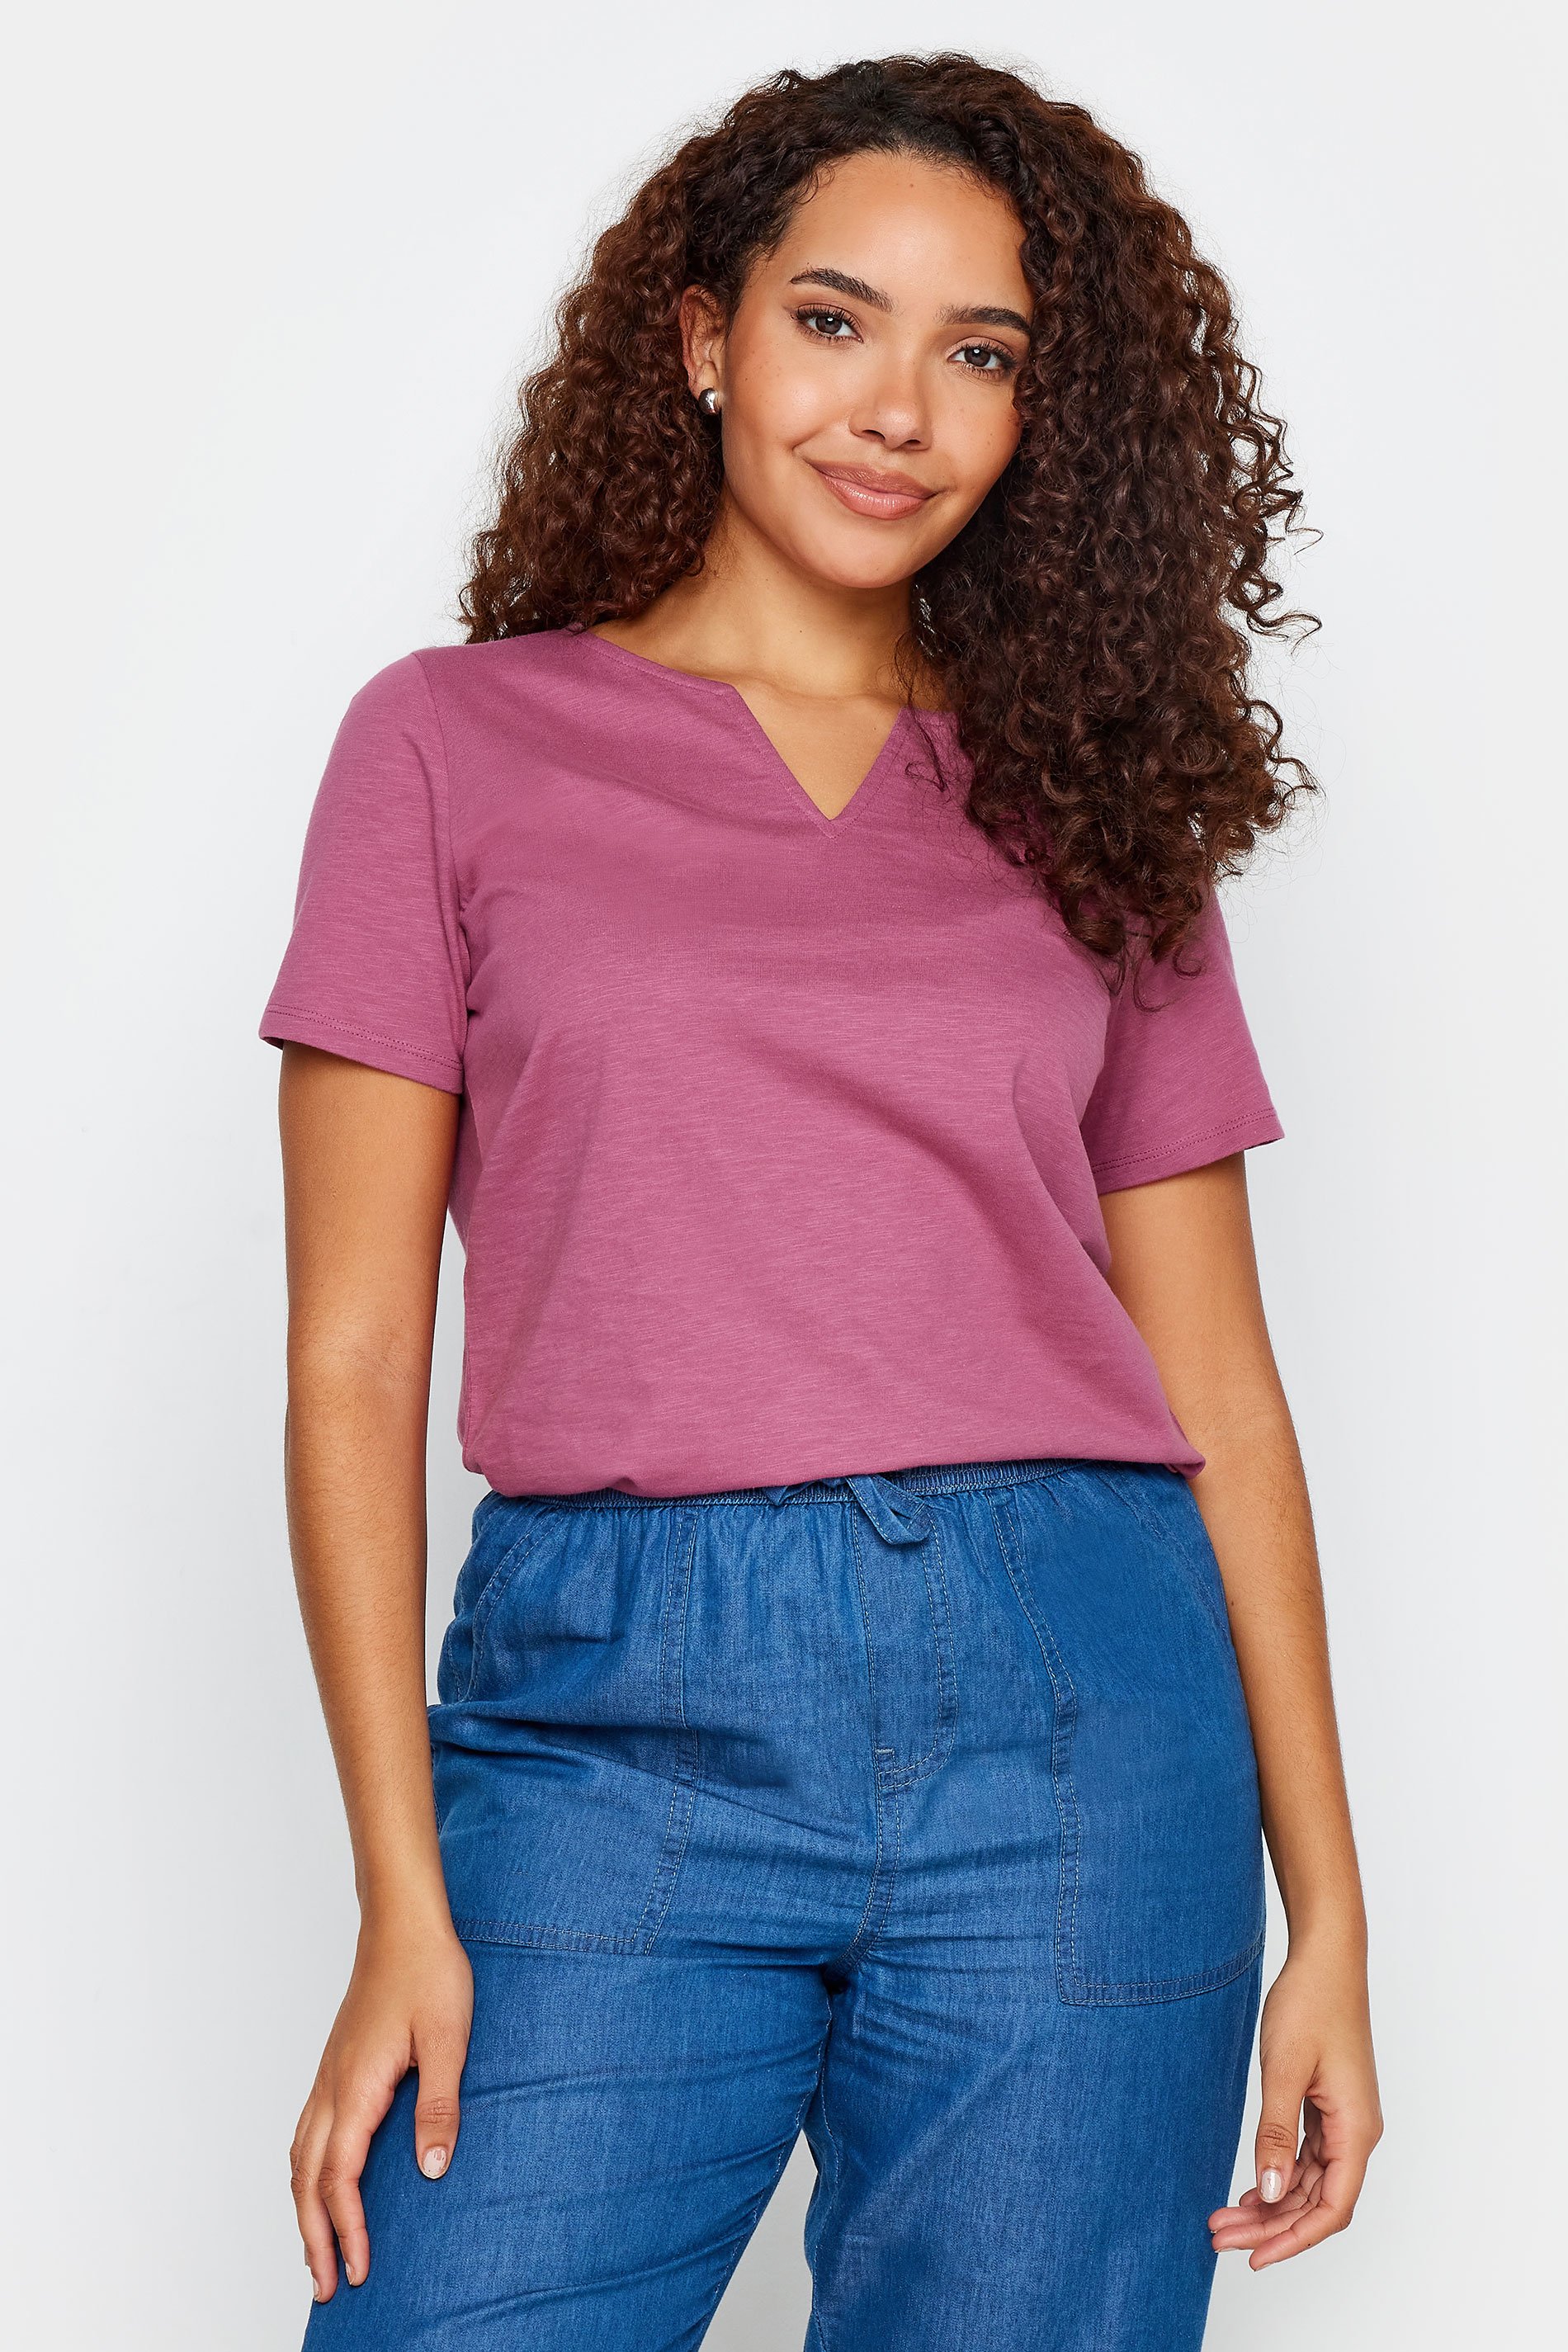 M&Co Pink Notch Neck Cotton T-Shirt | M&Co 1